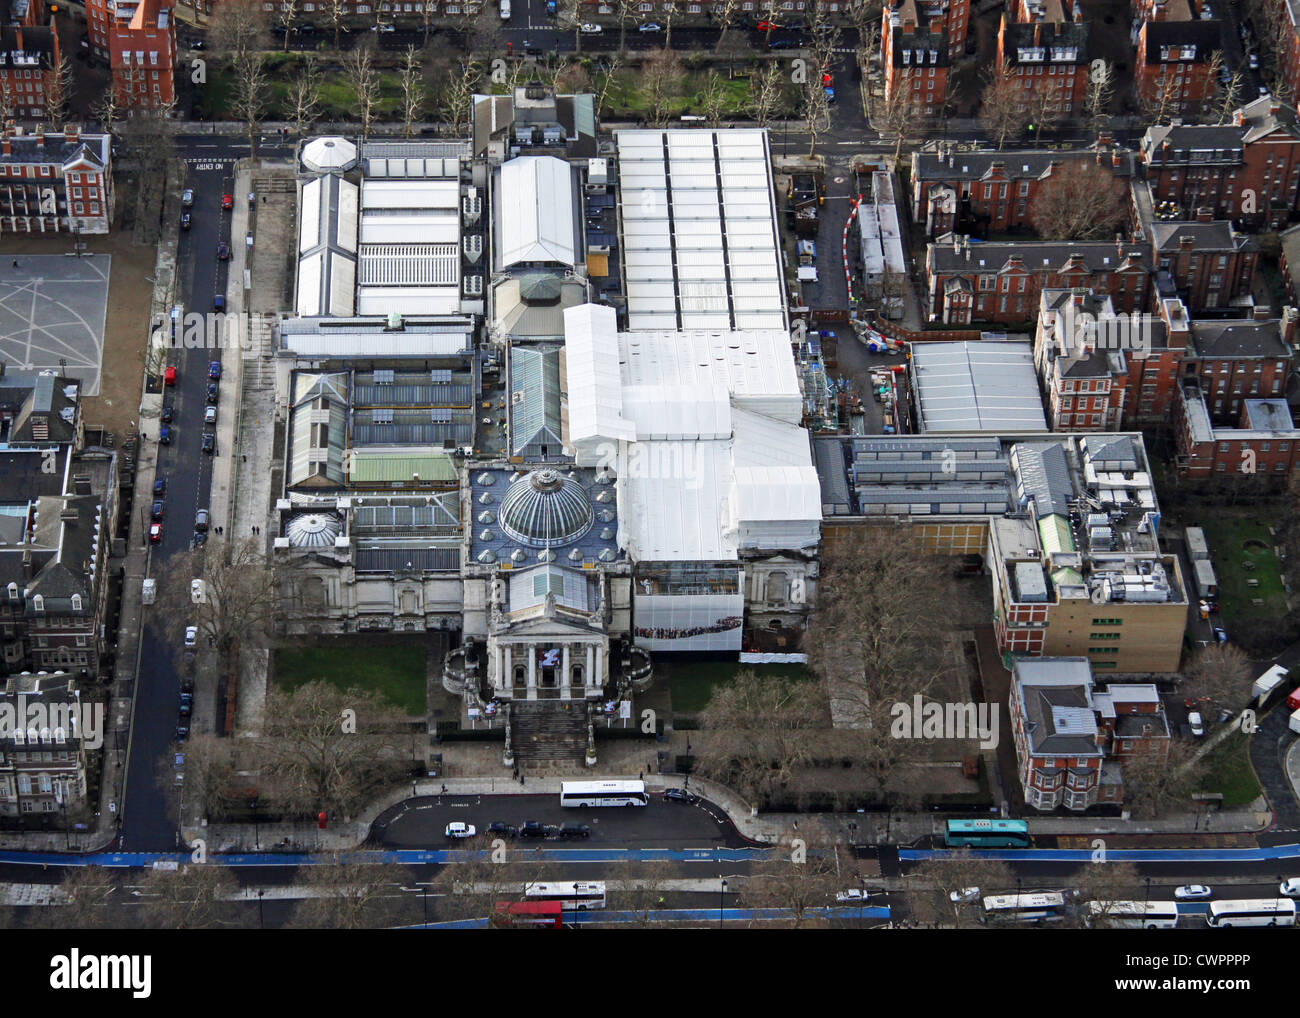 Vista aerea della galleria d'arte Tate Britain museum, Millbank, London SW1 Foto Stock